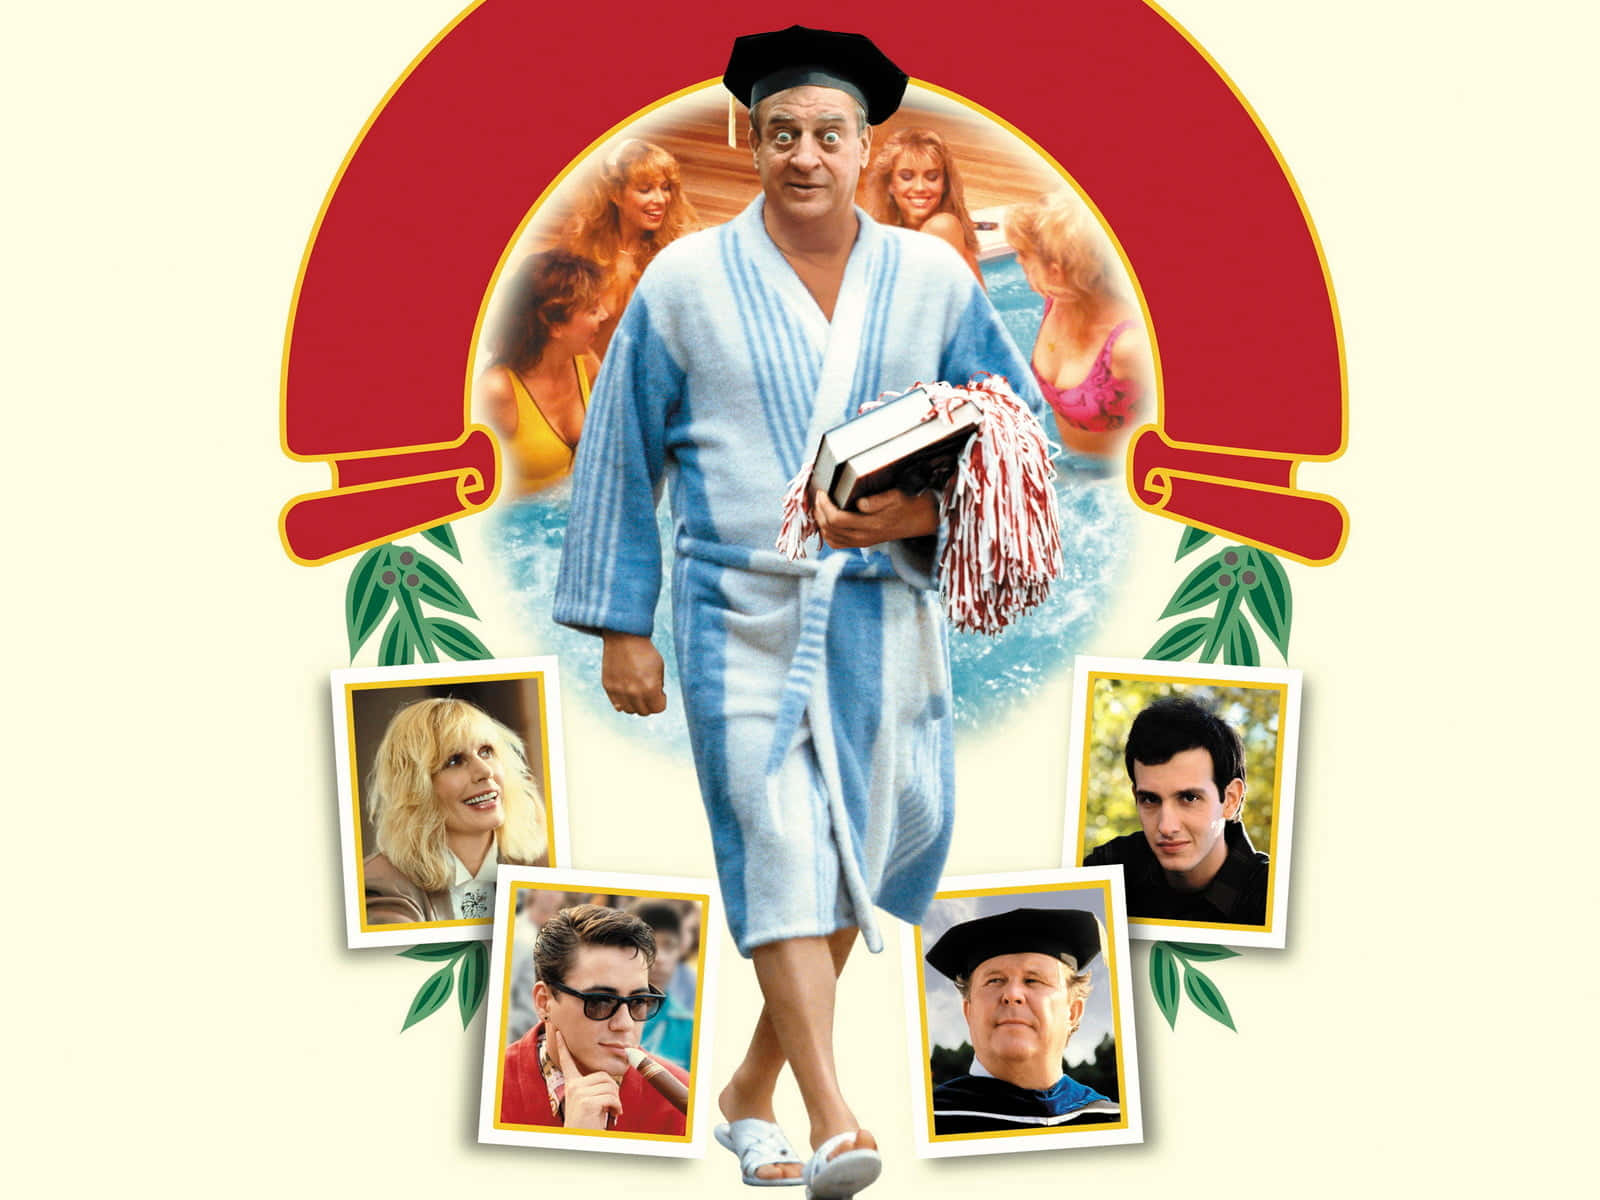 Comedy Legend Rodney Dangerfield in "Back to School" Movie Poster Wallpaper